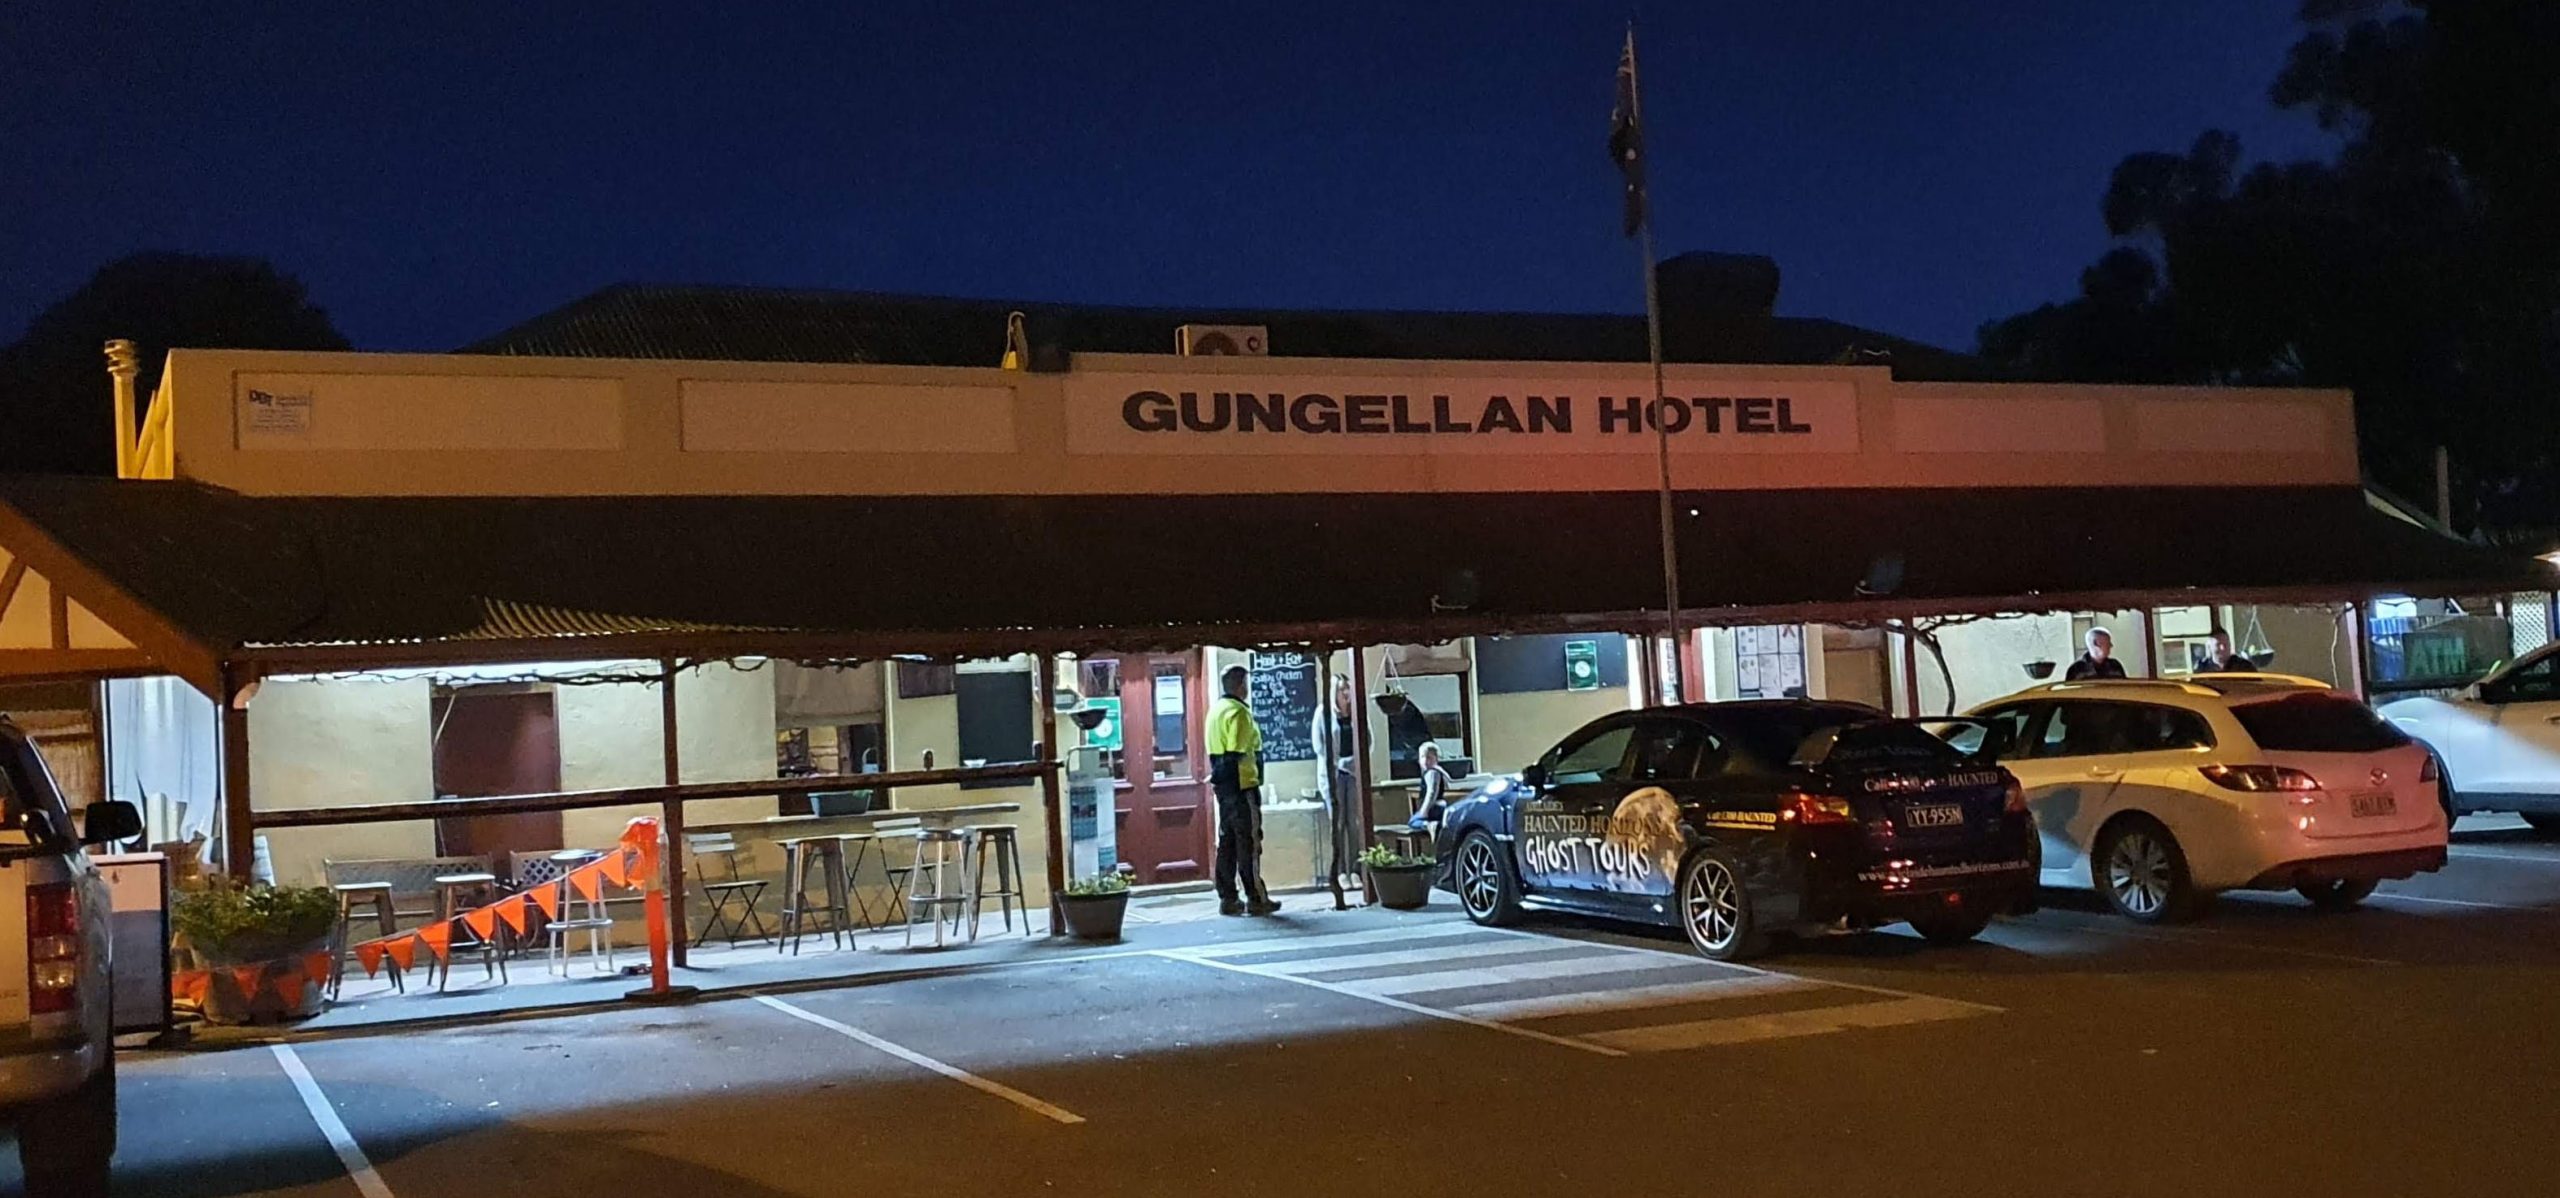 Gungellan Hotel Ghosts